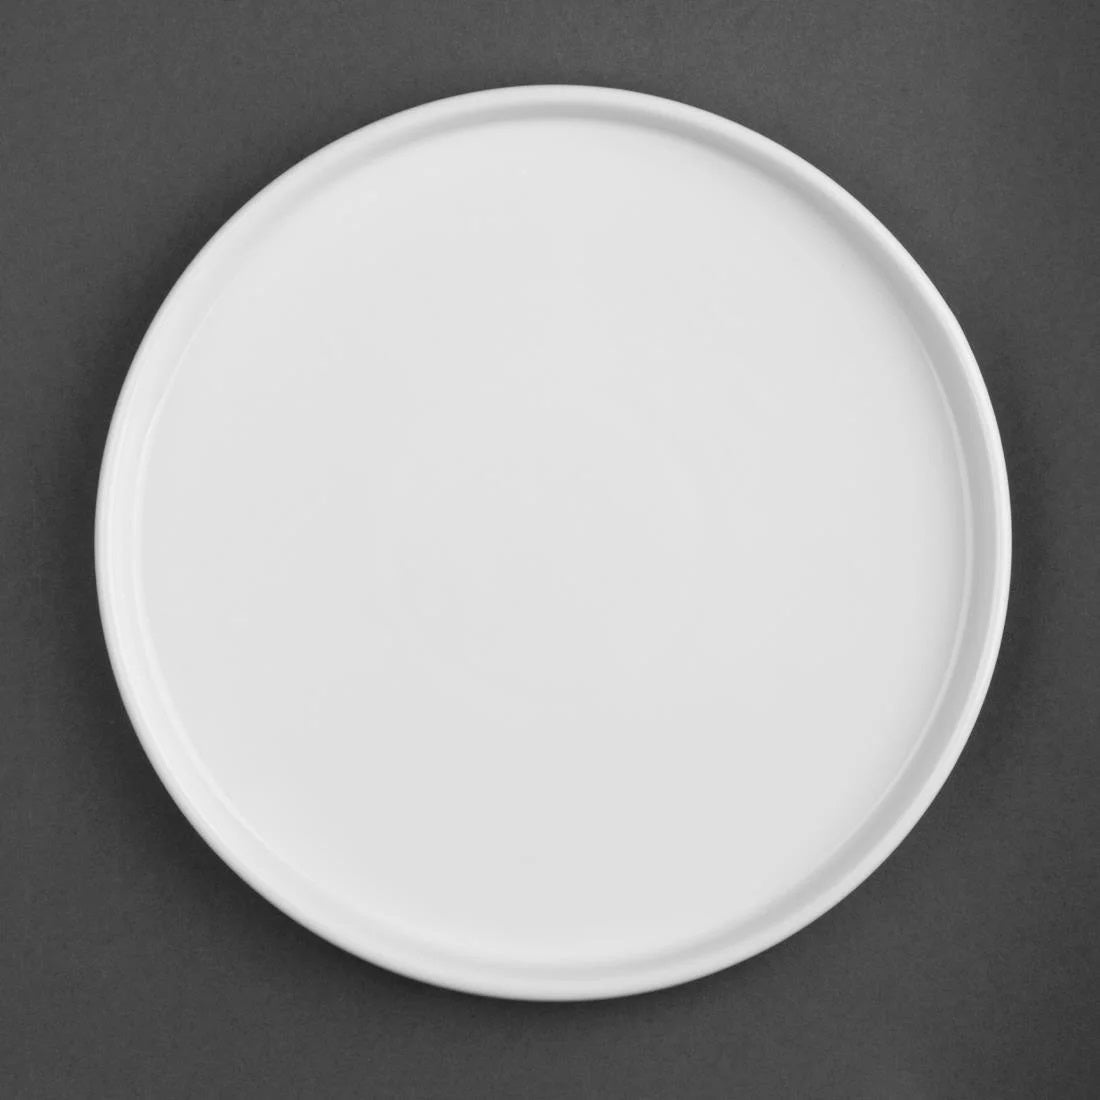 Olympia Whiteware Flat Round Plates - range of sizes available